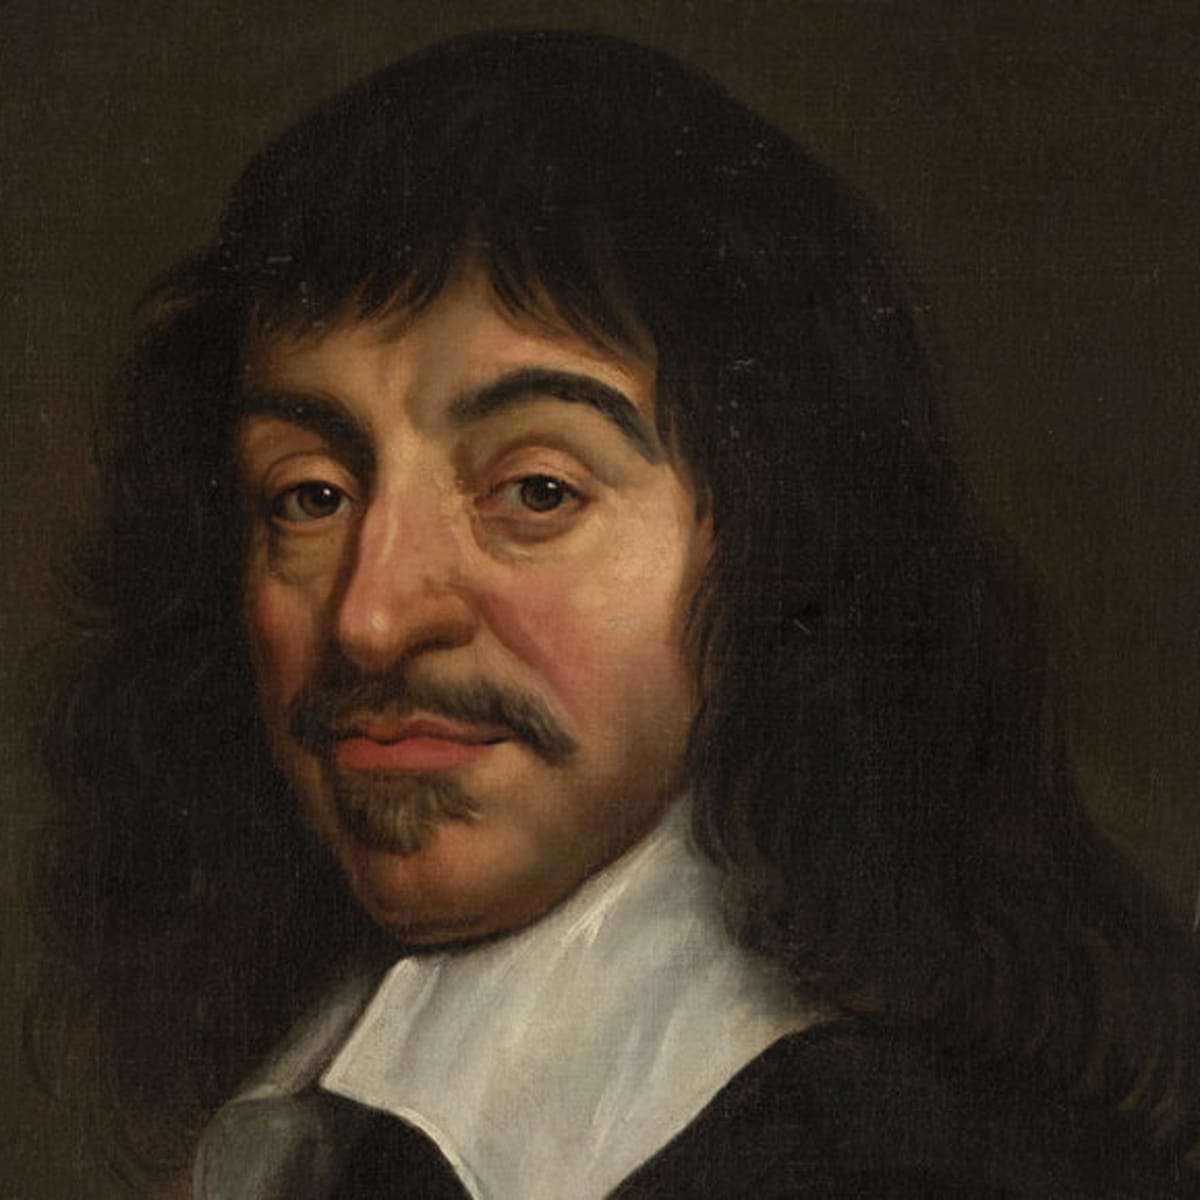 René Descartes puzzle online fotóról